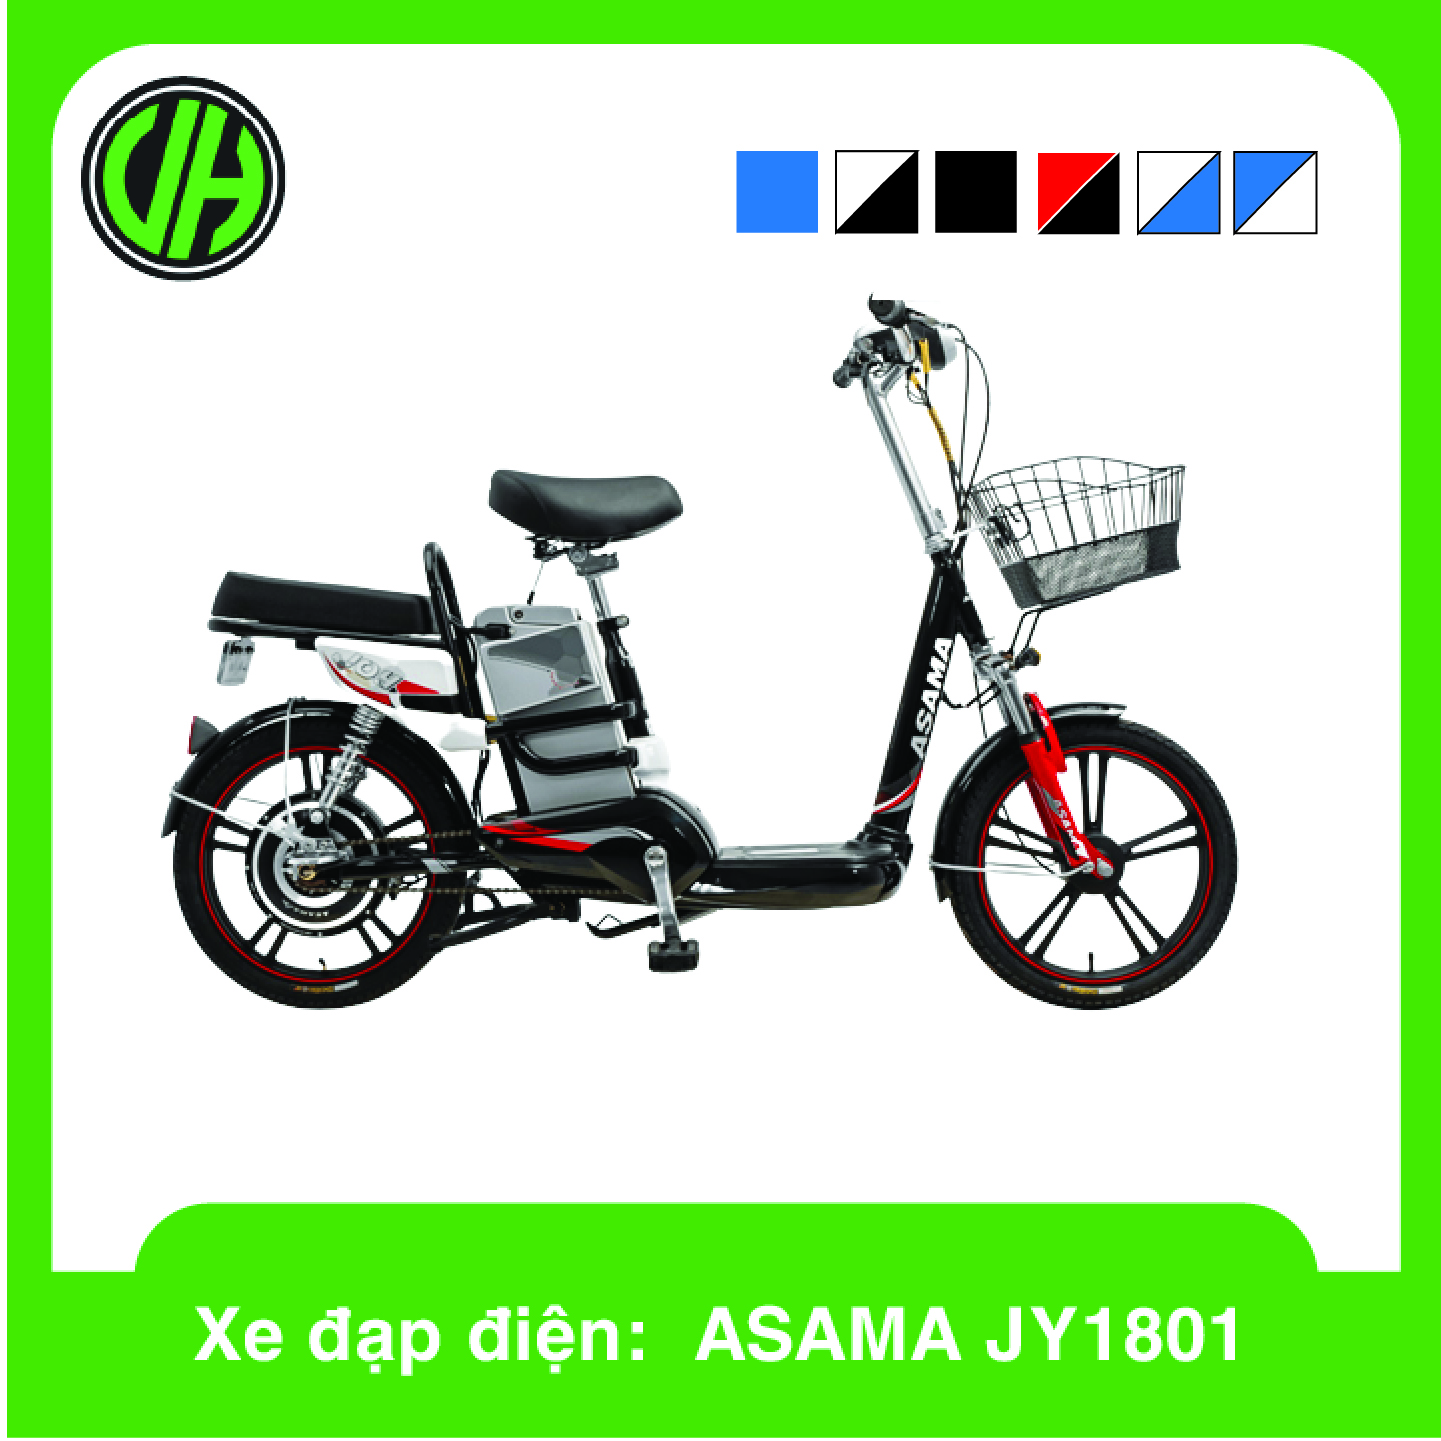 Giá xe đạp điện Asama bao nhiêu 8 sản phẩm đáng mua nhất